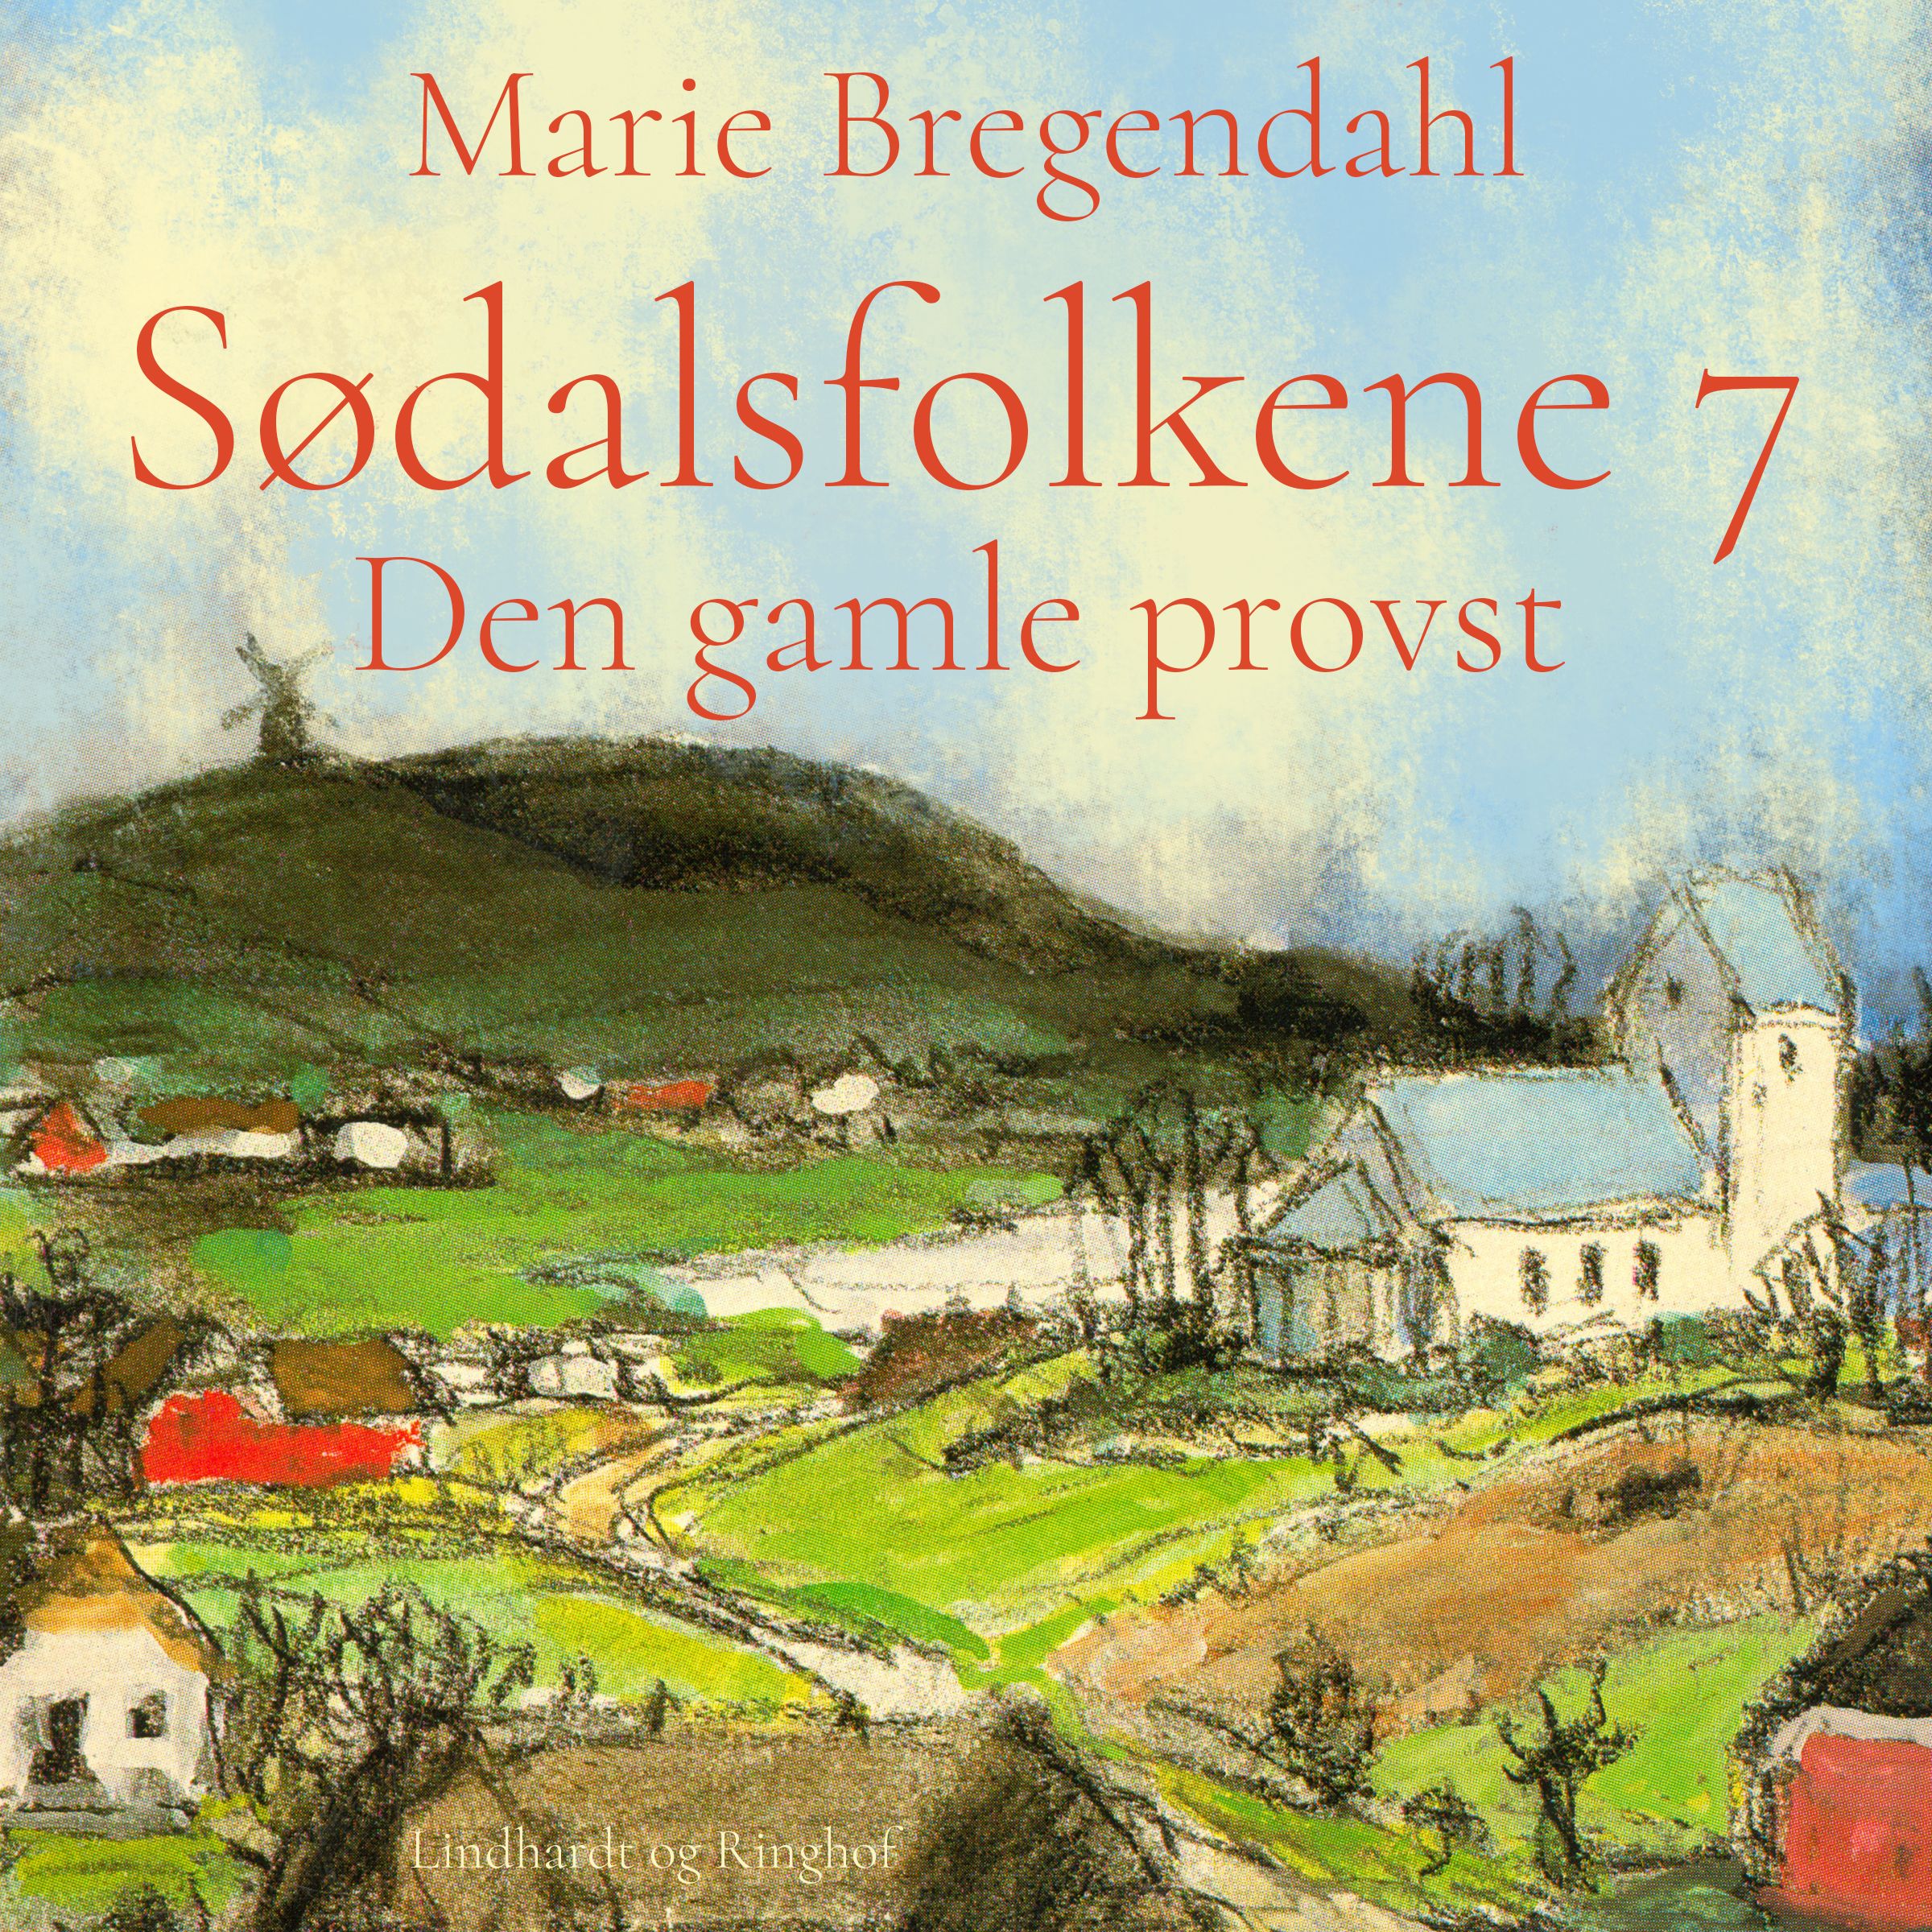 Sødalsfolkene - Den gamle provst, lydbog af Marie Bregendahl